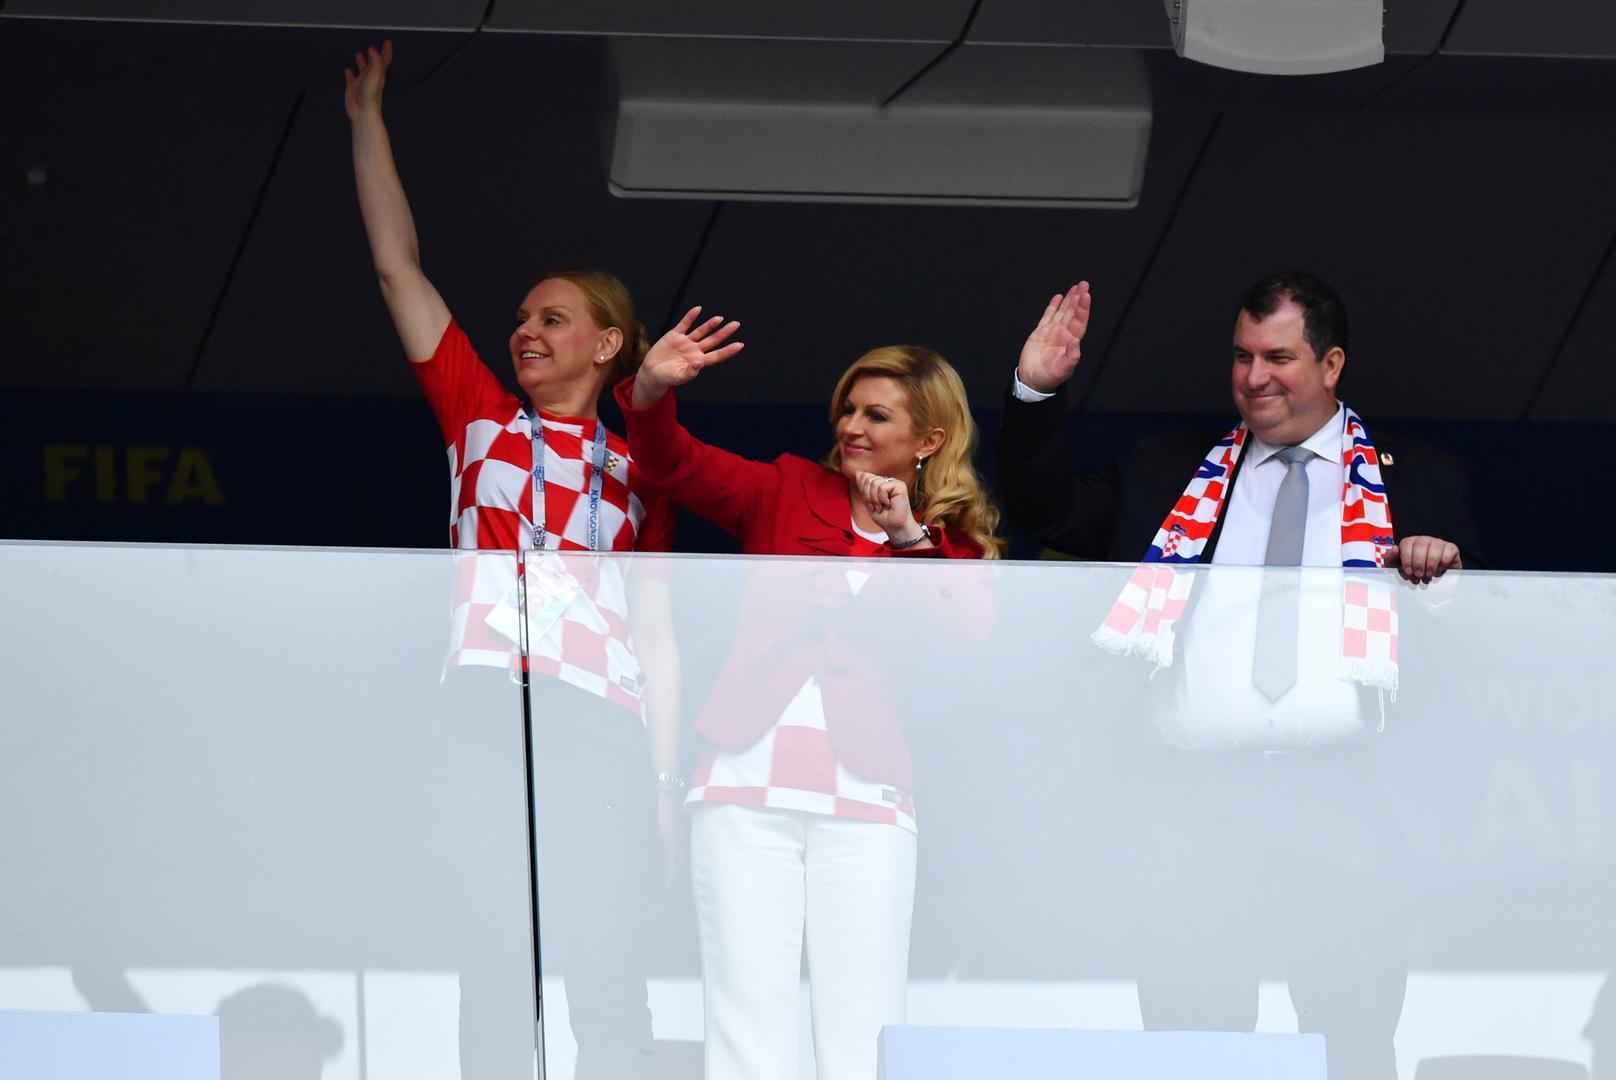 Finale Hrvatske i Francuske u Rusiji na stadionu Lužnjiki prati i hrvatska predsjednica Kolinda Grabar Kitarović.

